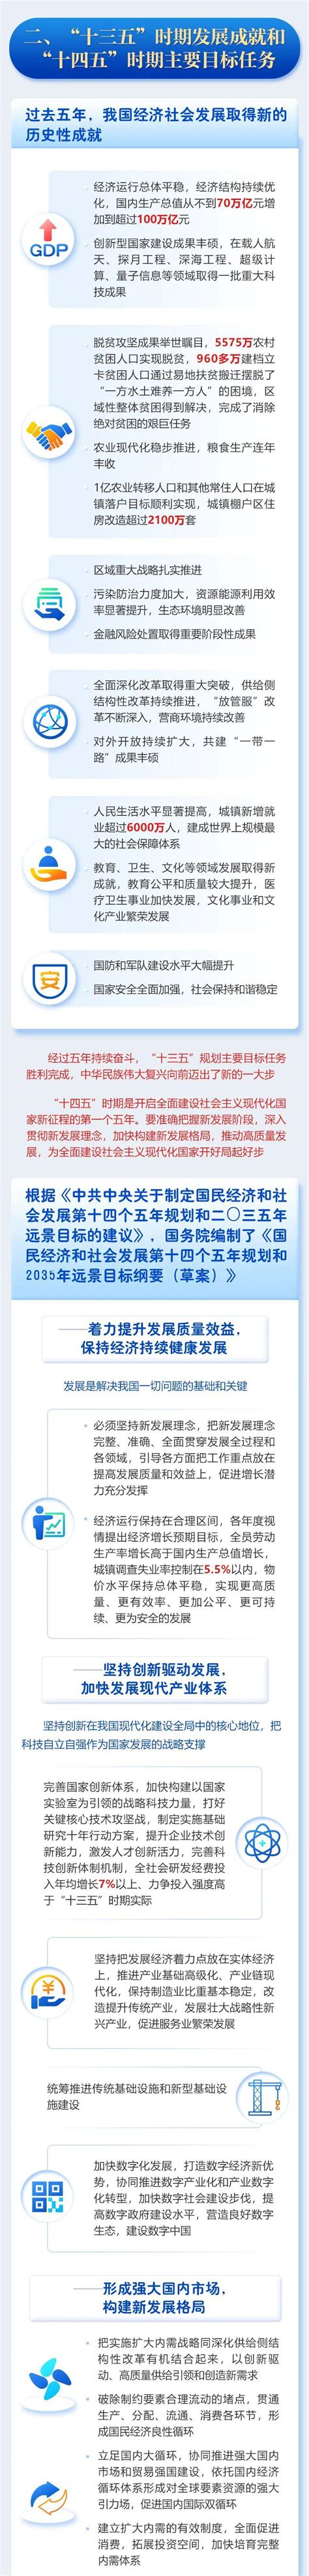 一图读懂2021广东省政府工作报告_深圳新闻网